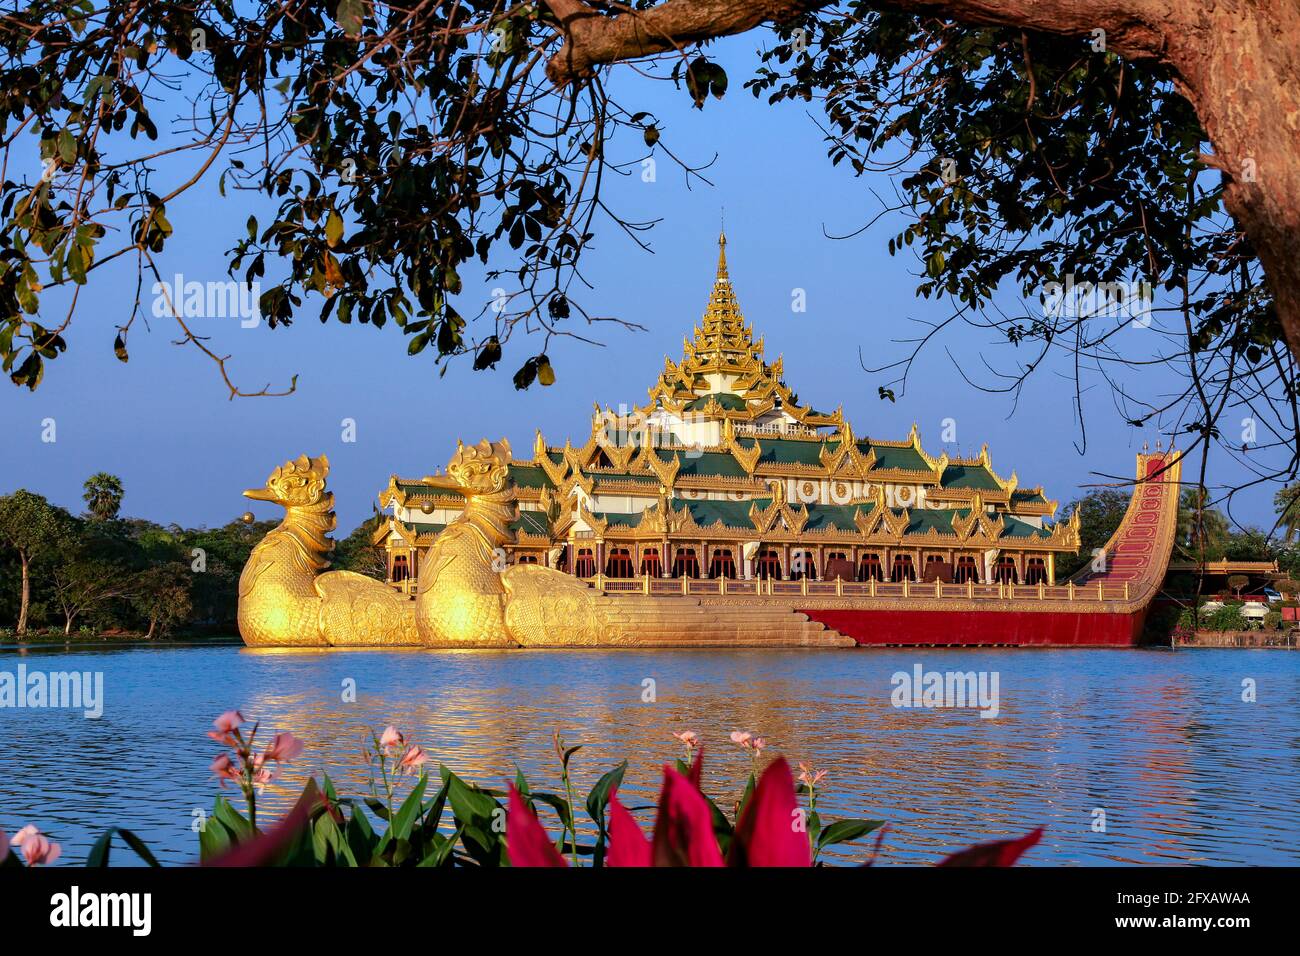 Le Karaweik - réplique d'une barge royale birmane sur le lac de Kandawgyi à Yangon, au Myanmar. Bien qu'il s'agisse d'un monument national, il abrite maintenant un restaurant. Banque D'Images